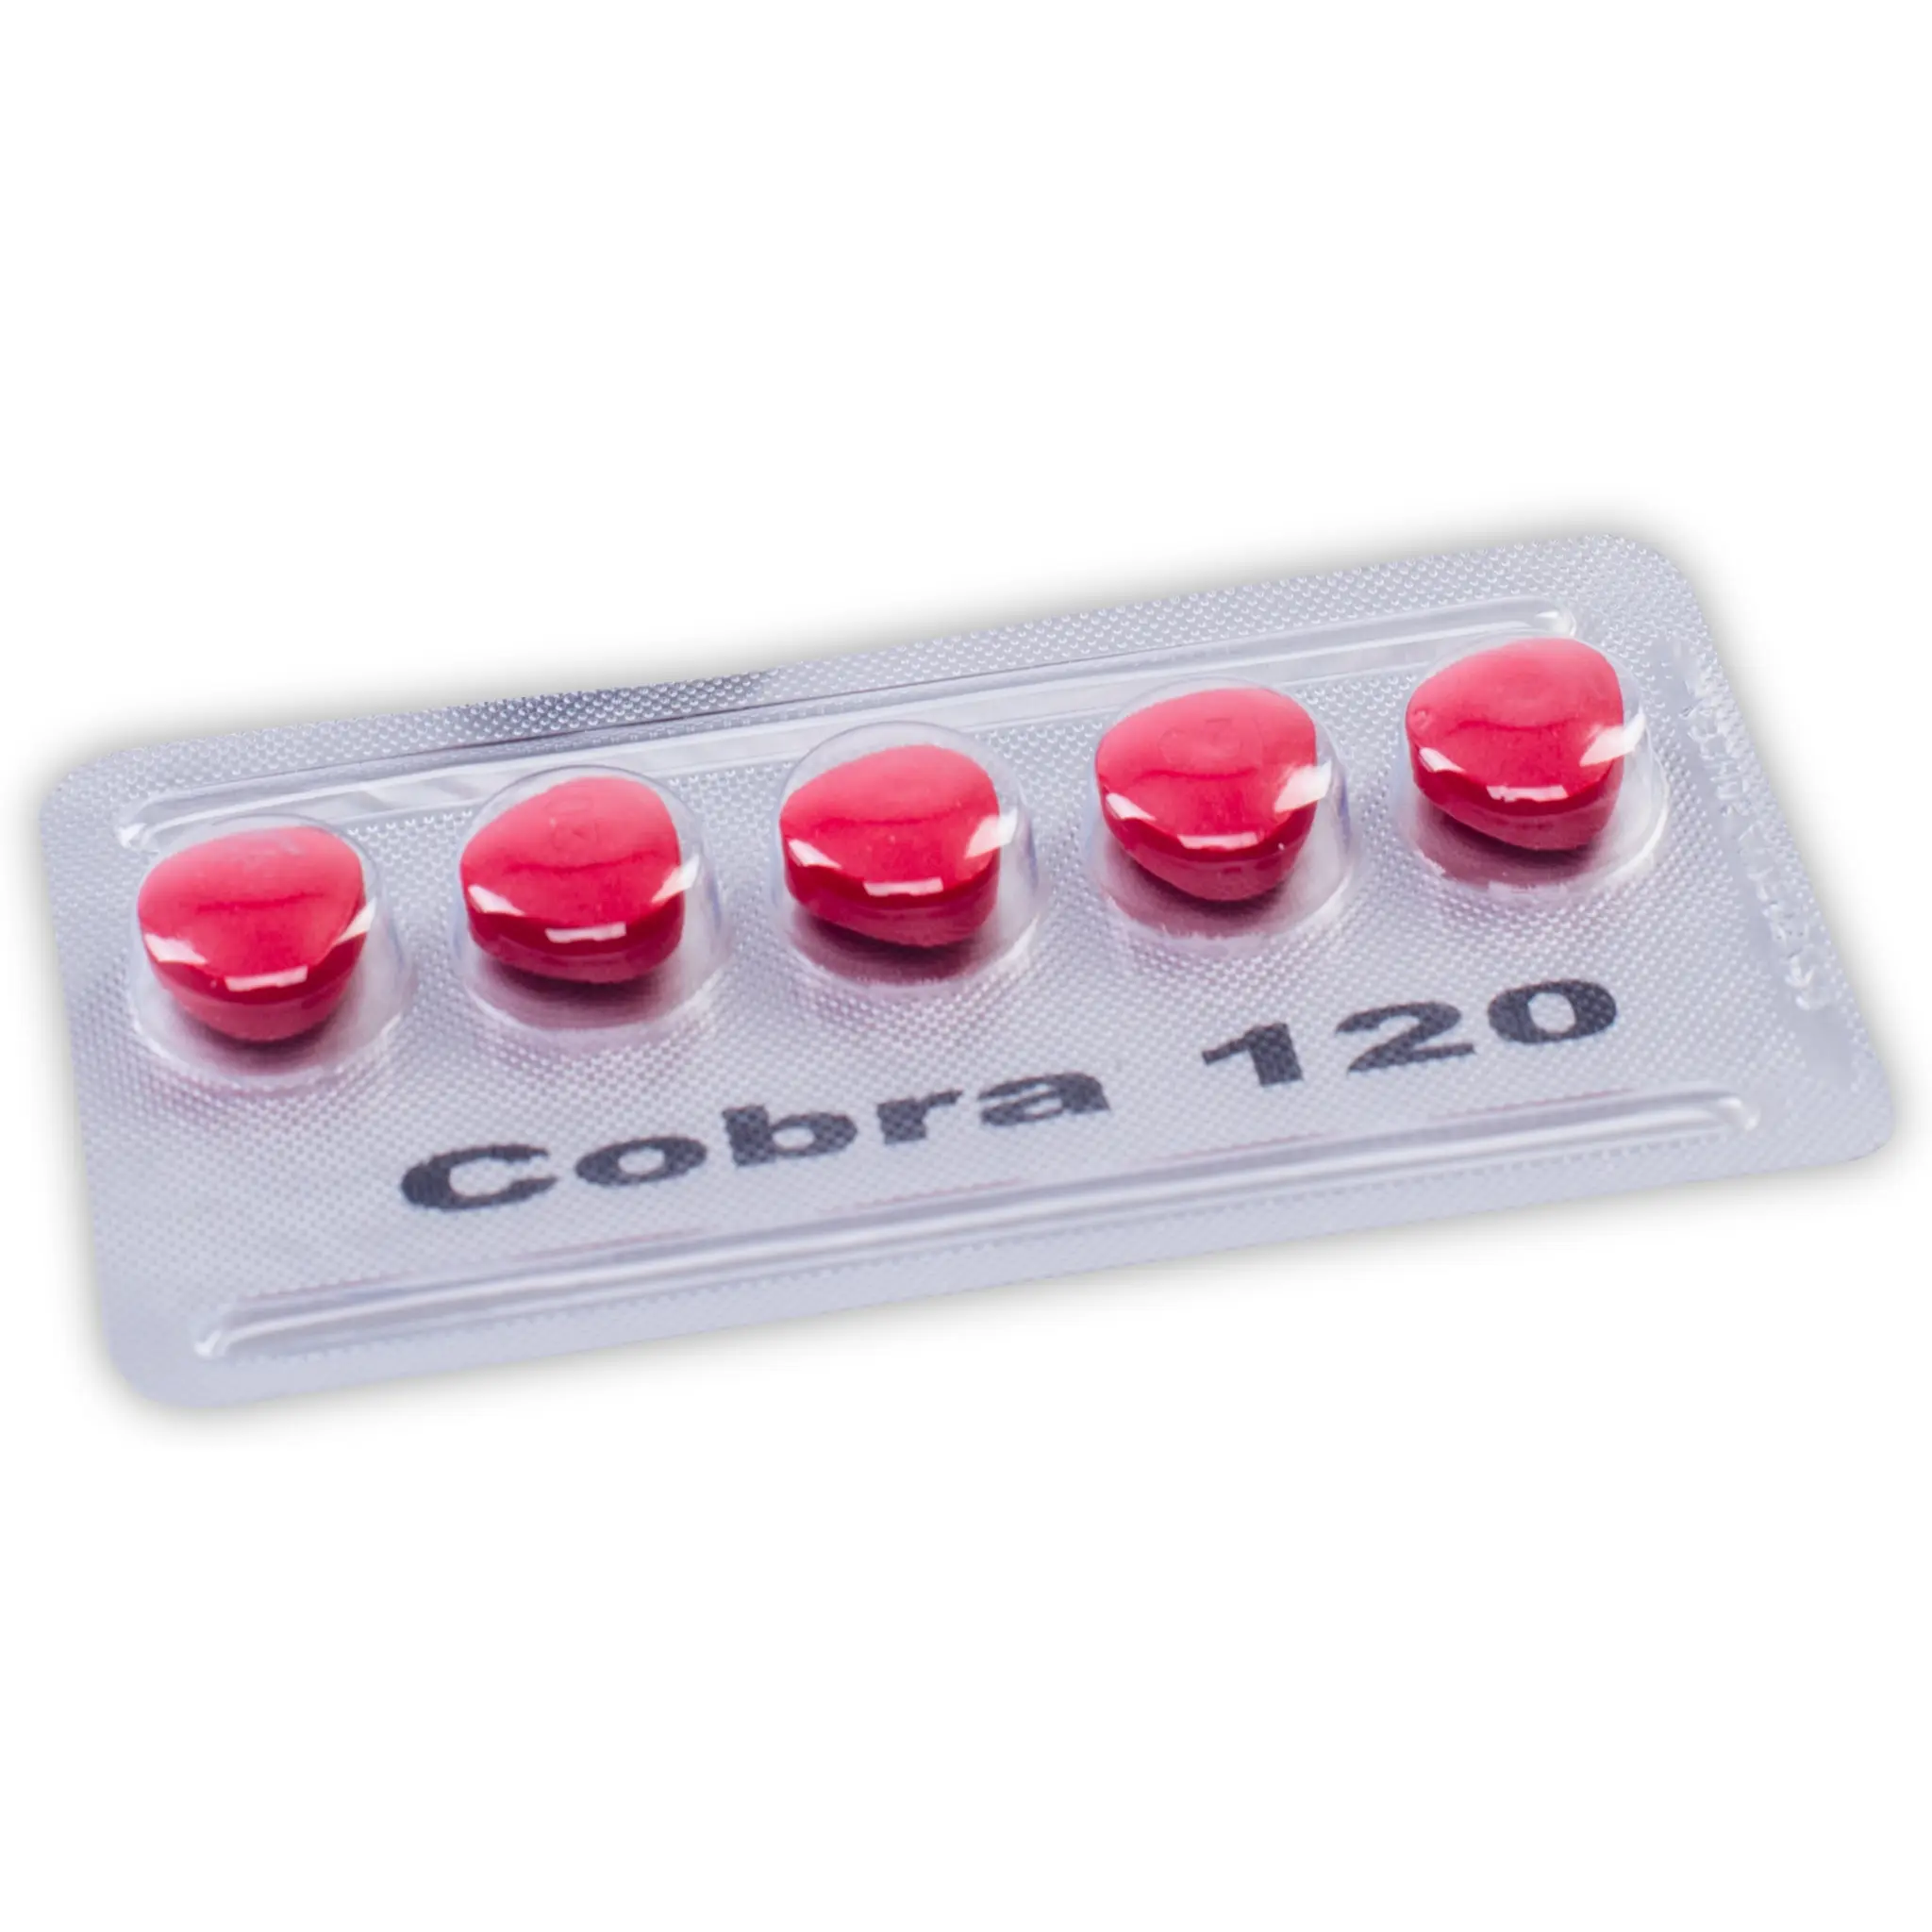 Cobra 120 - tablete za muškarce - Kamagra za potenciju